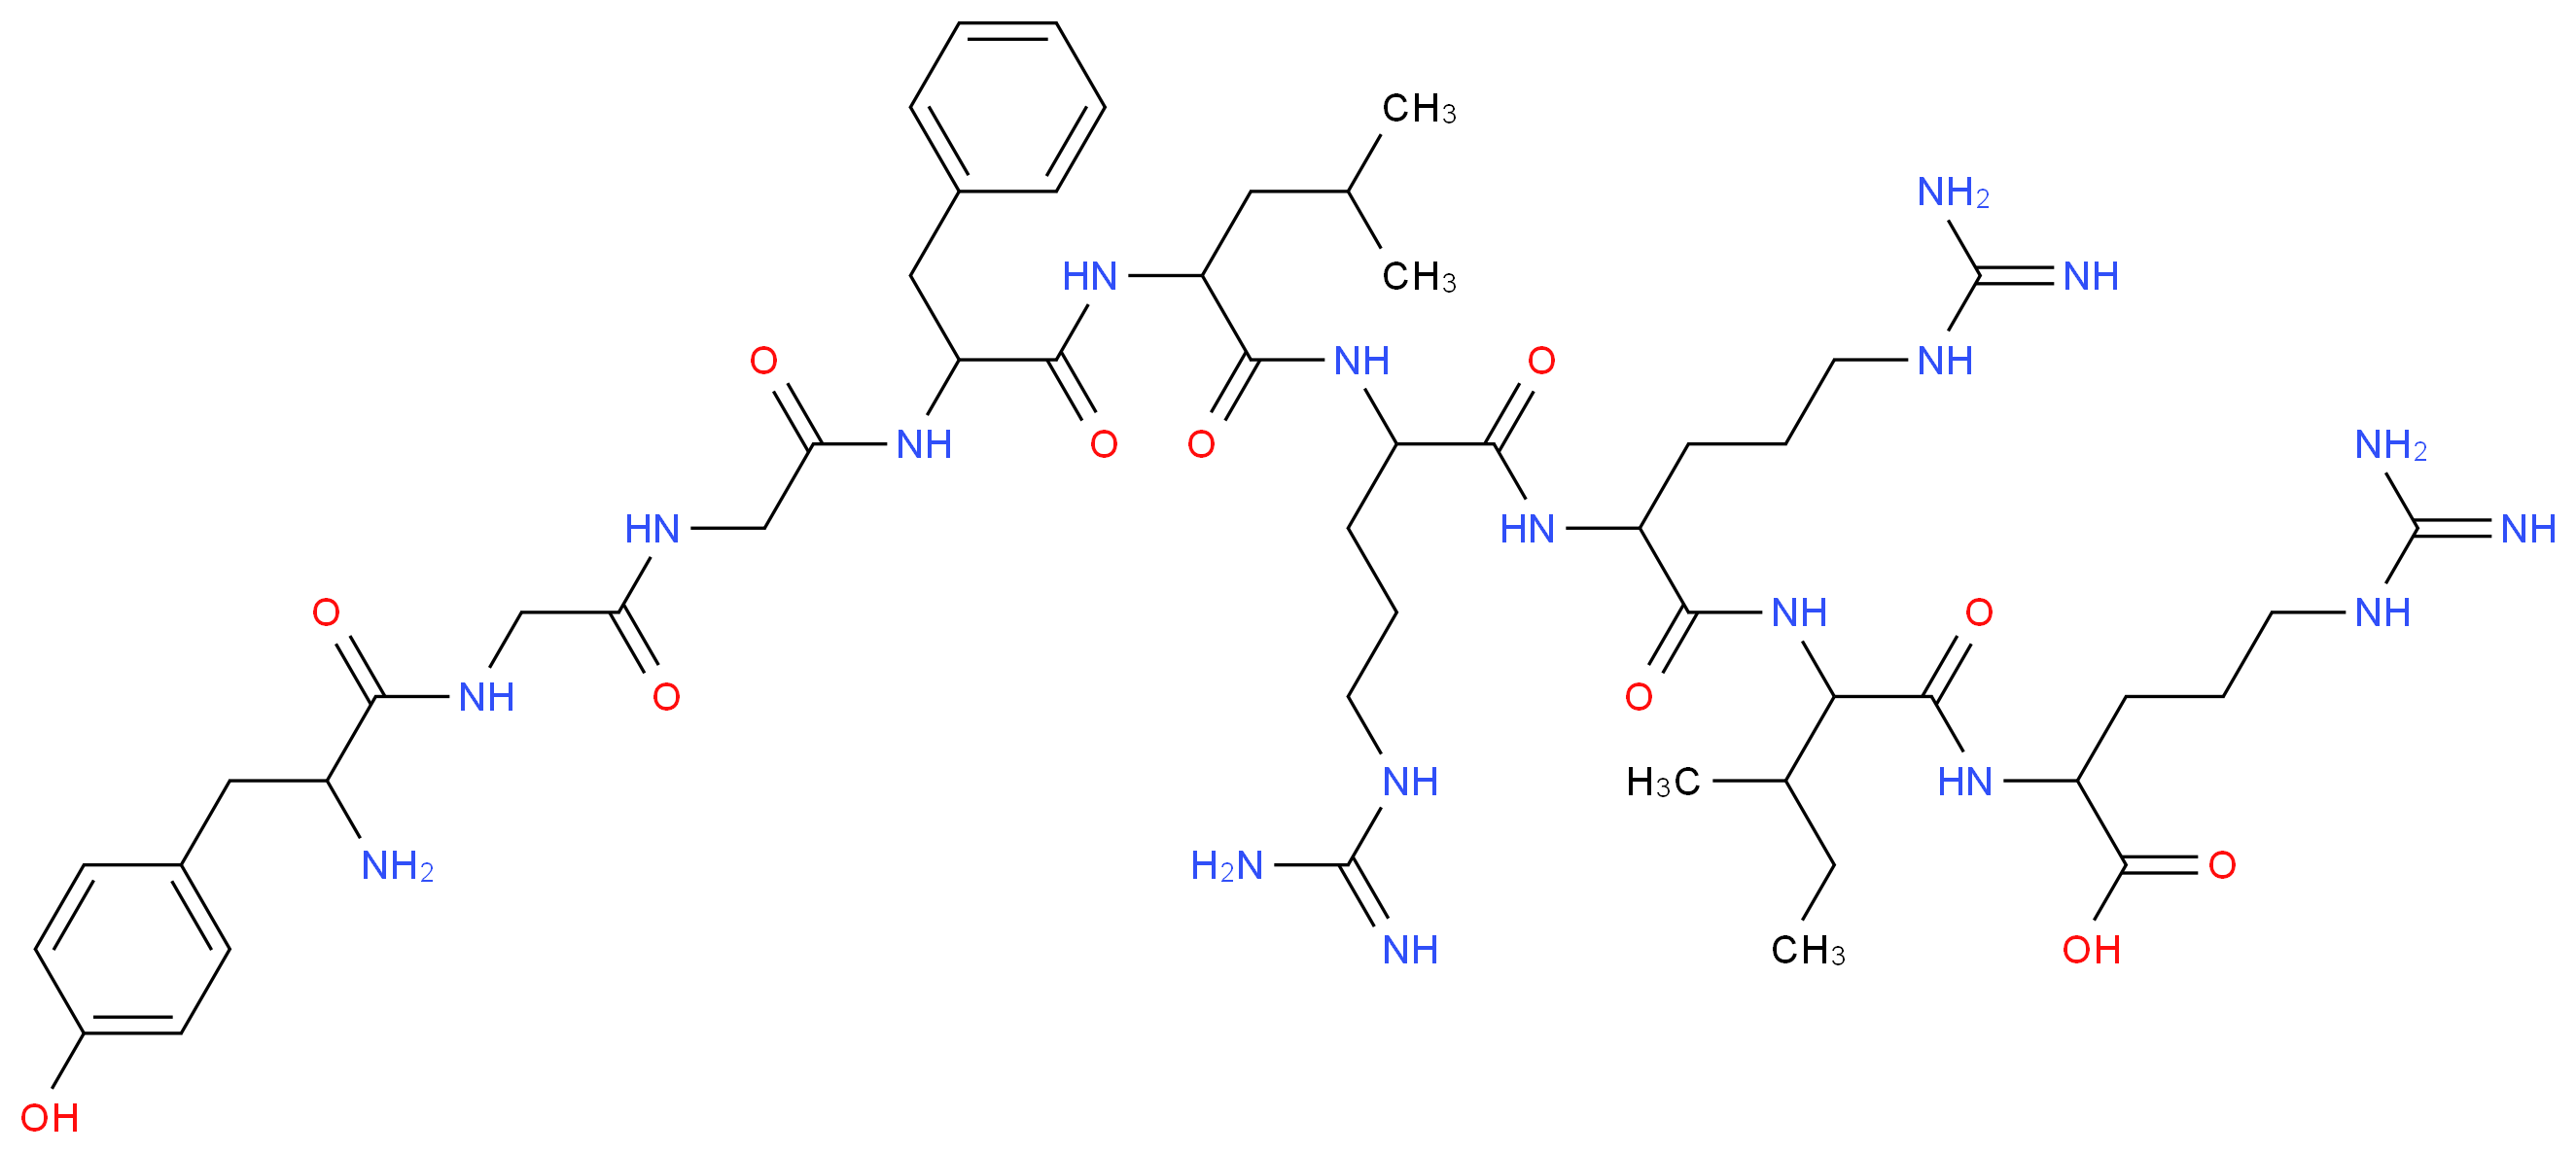 2-{2-[2-(2-{2-[2-(2-{2-[2-amino-3-(4-hydroxyphenyl)propanamido]acetamido}acetamido)-3-phenylpropanamido]-4-methylpentanamido}-5-carbamimidamidopentanamido)-5-carbamimidamidopentanamido]-3-methylpentanamido}-5-carbamimidamidopentanoic acid_分子结构_CAS_77259-54-2